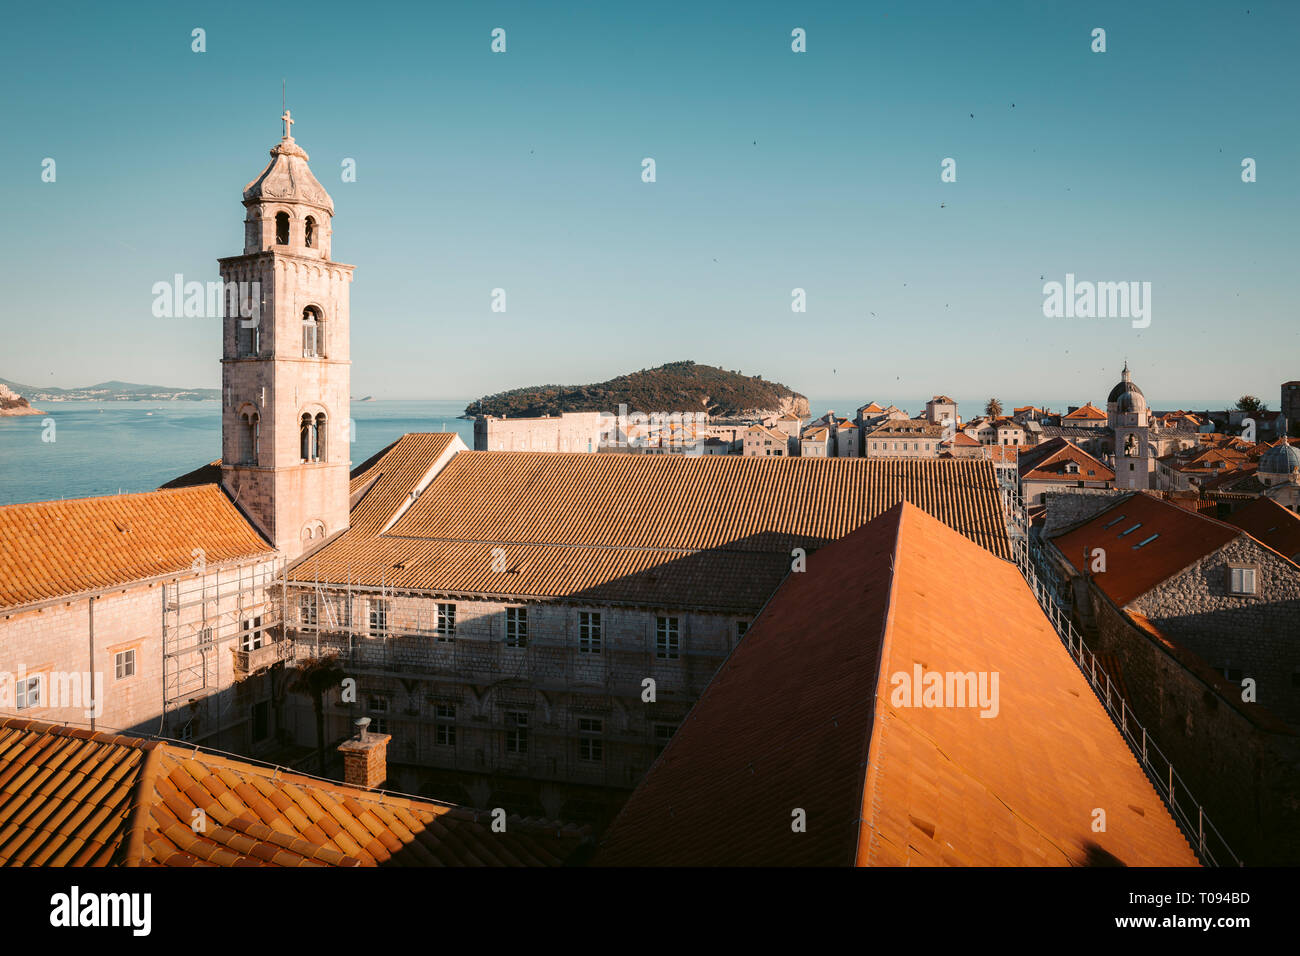 Klassische Panoramablick auf die historische Altstadt von Dubrovnik, eines der bekanntesten touristischen Destinationen im Mittelmeer, bei Sonnenuntergang, Dalmatien, C Stockfoto